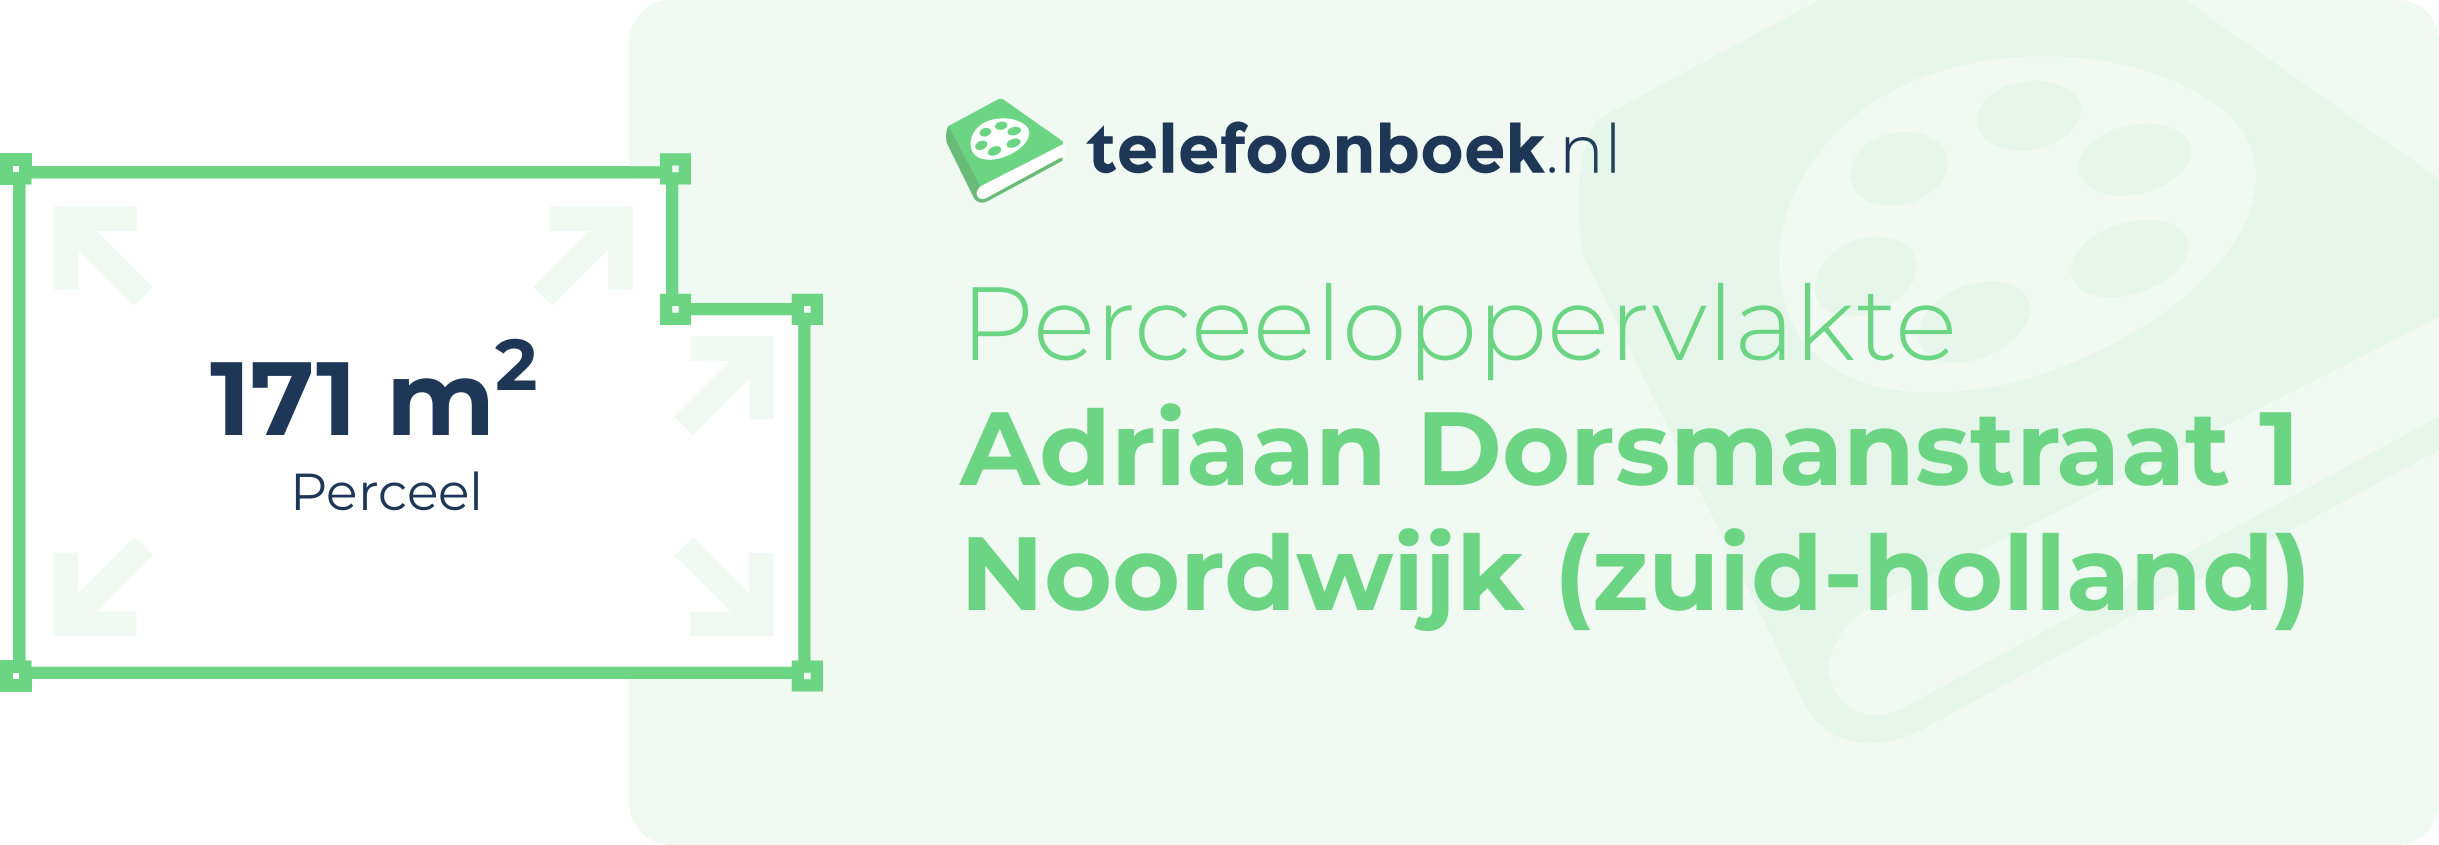 Perceeloppervlakte Adriaan Dorsmanstraat 1 Noordwijk (Zuid-Holland)